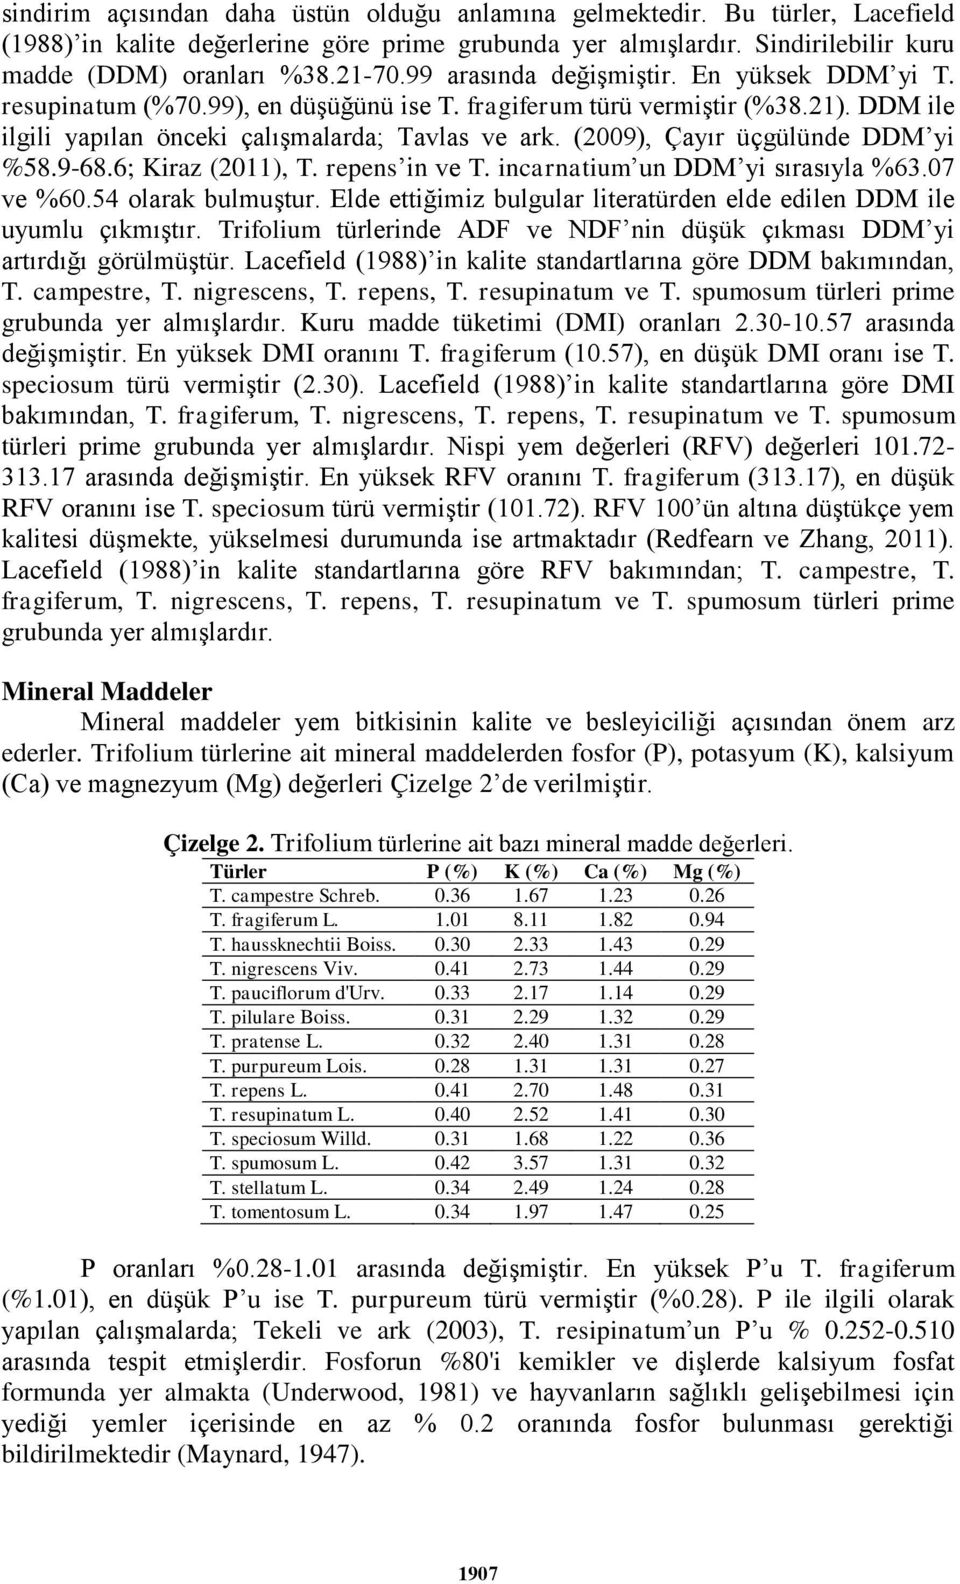 (2009), Çayır üçgülünde DDM yi %58.9-68.6; Kiraz (2011), T. repens in ve T. incarnatium un DDM yi sırasıyla %63.07 ve %60.54 olarak bulmuştur.